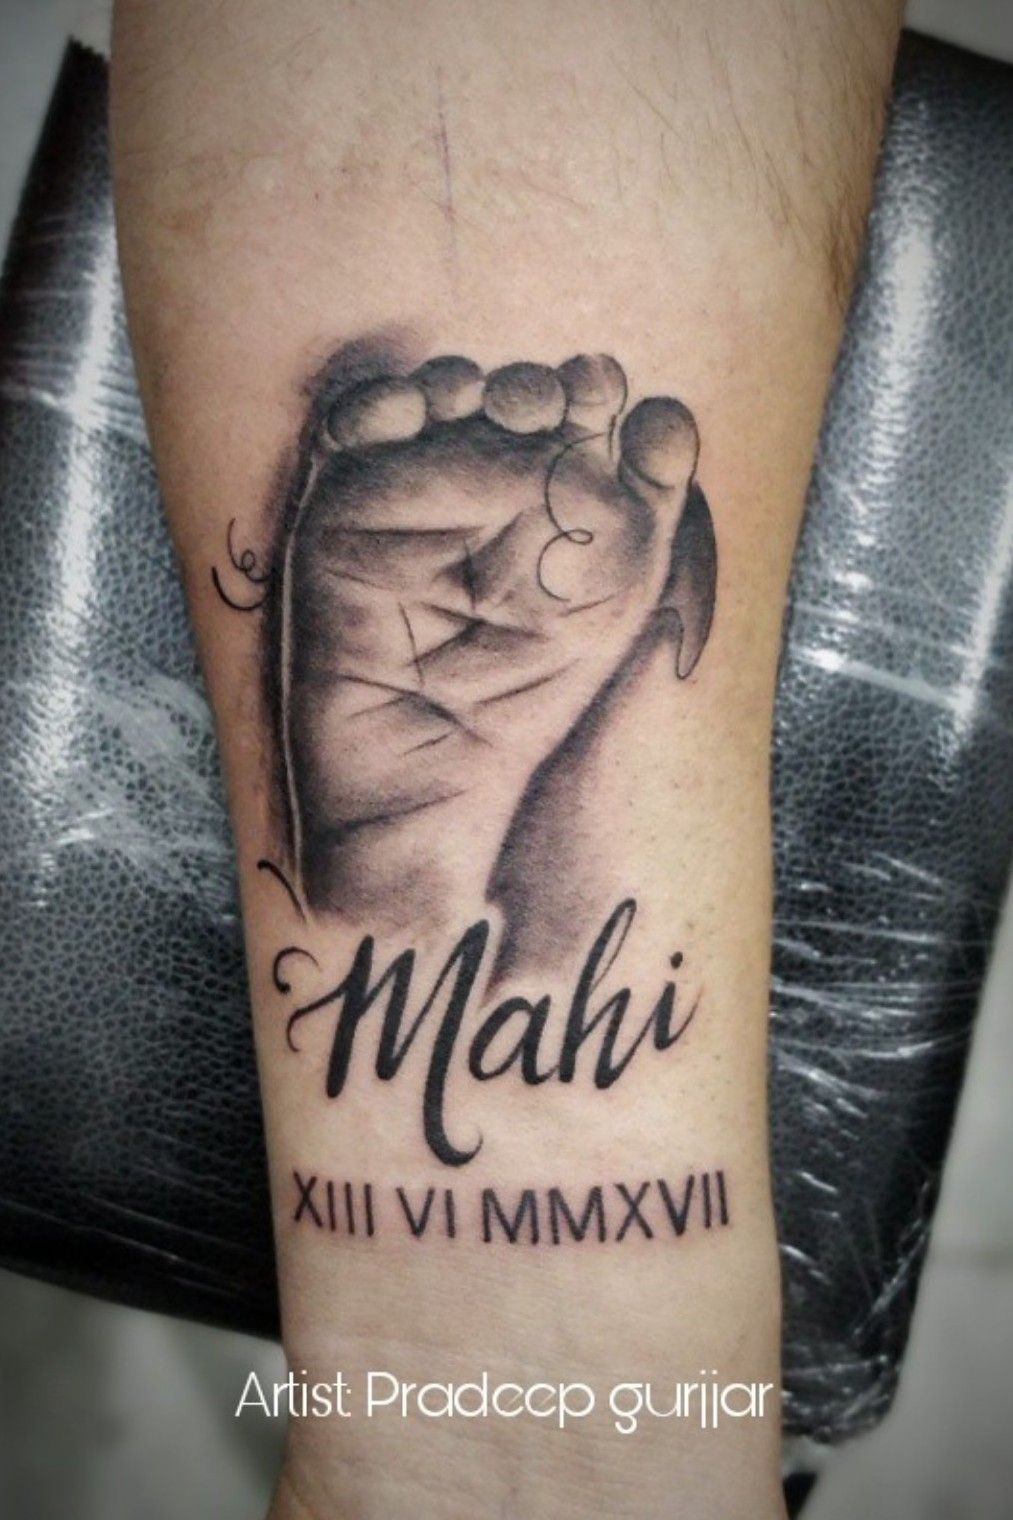 Update 74+ about mahi name tattoo super cool - in.daotaonec